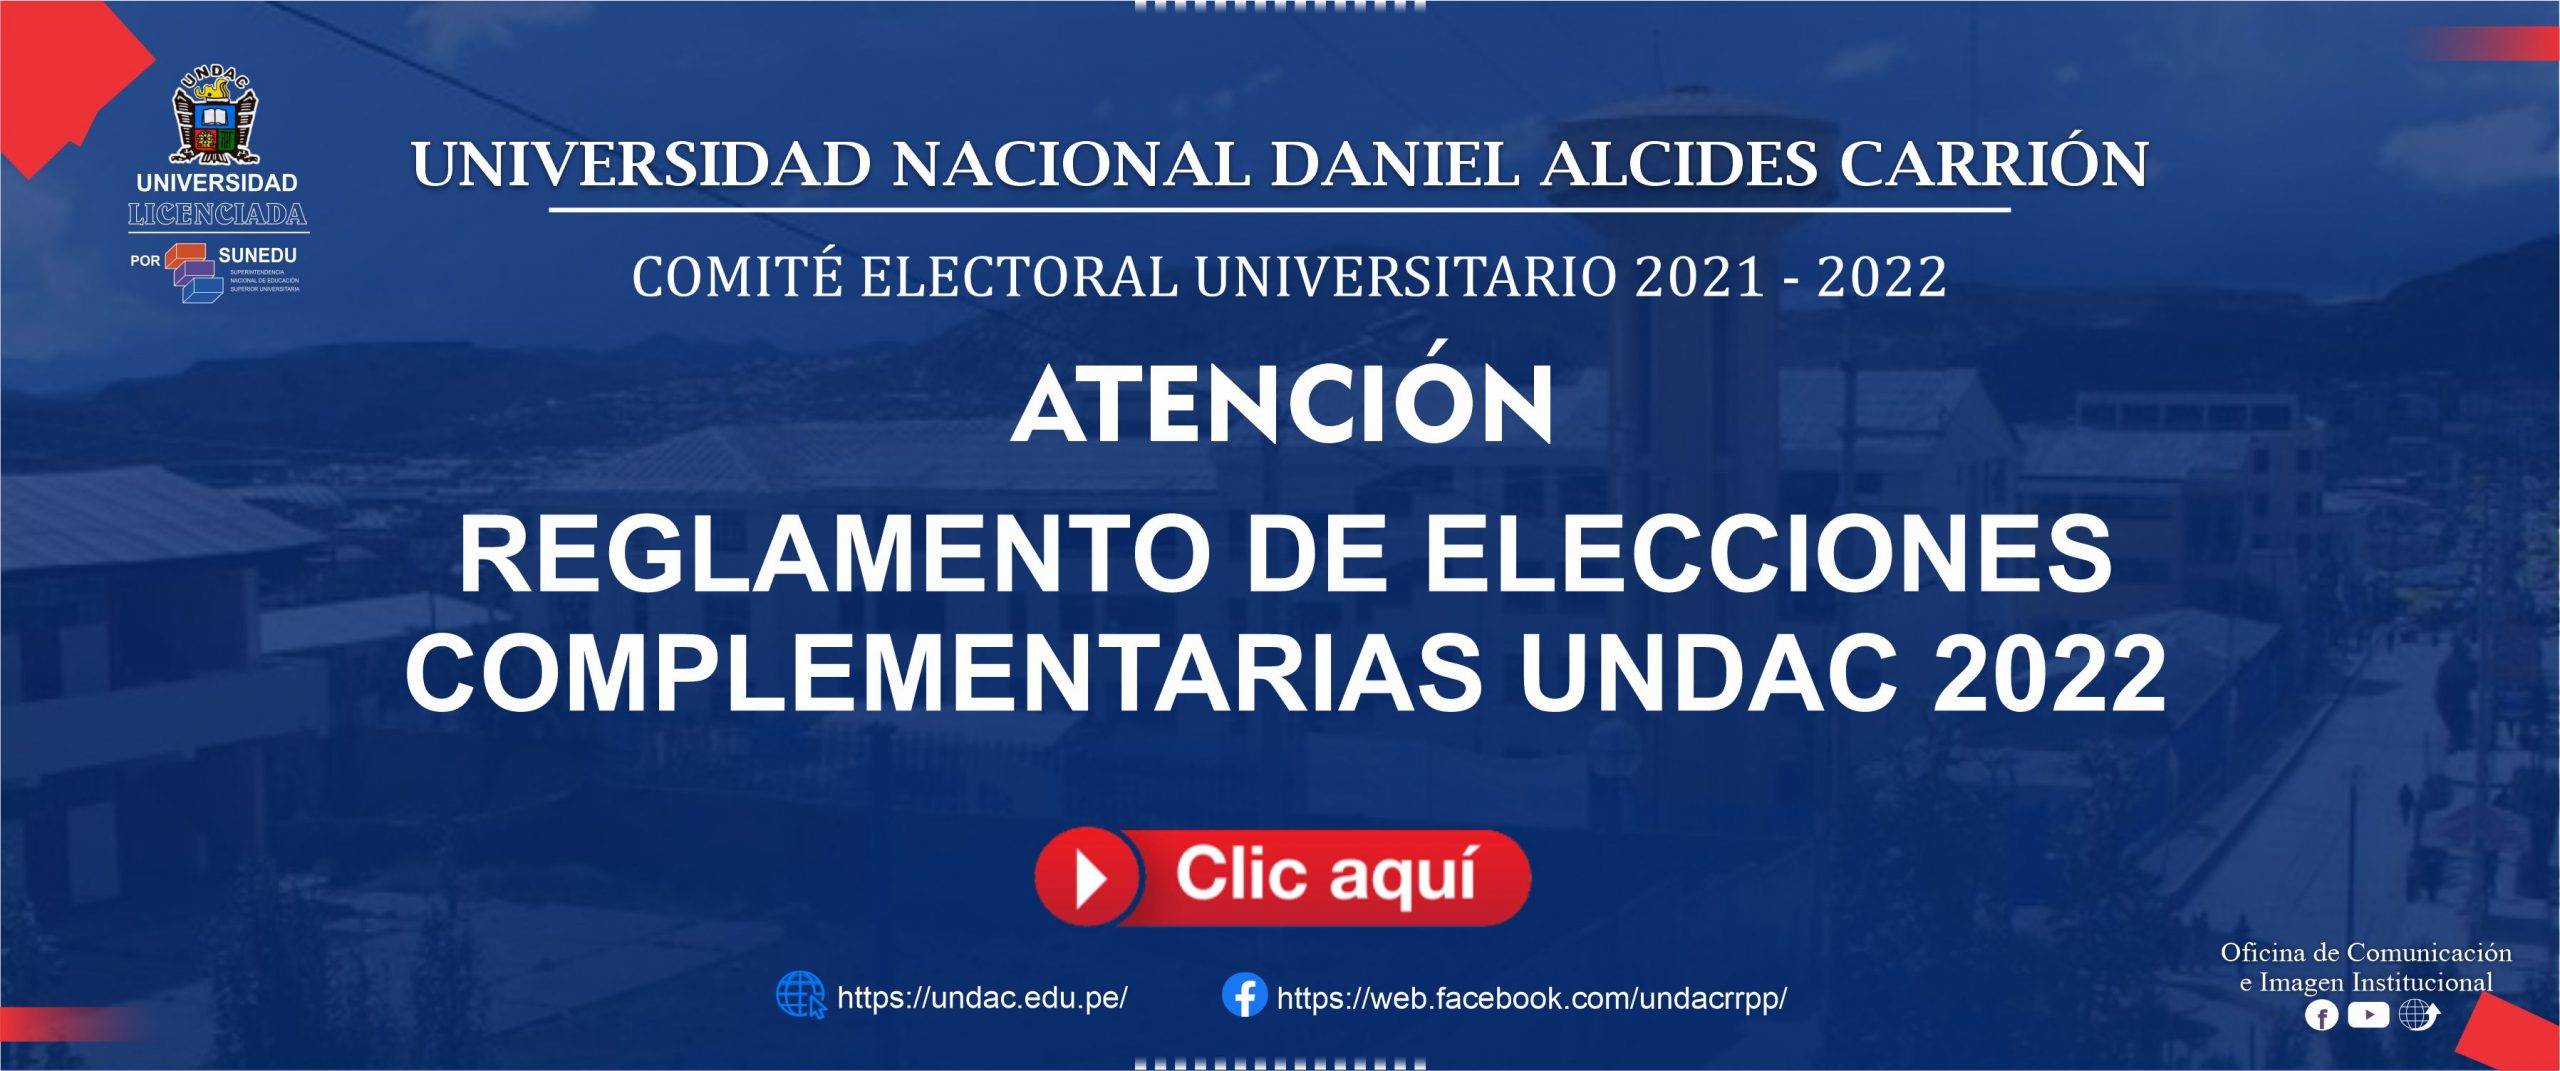 REGLAMENTO DE ELECCIONES COMPLEMENTARIAS UNDAC 2022